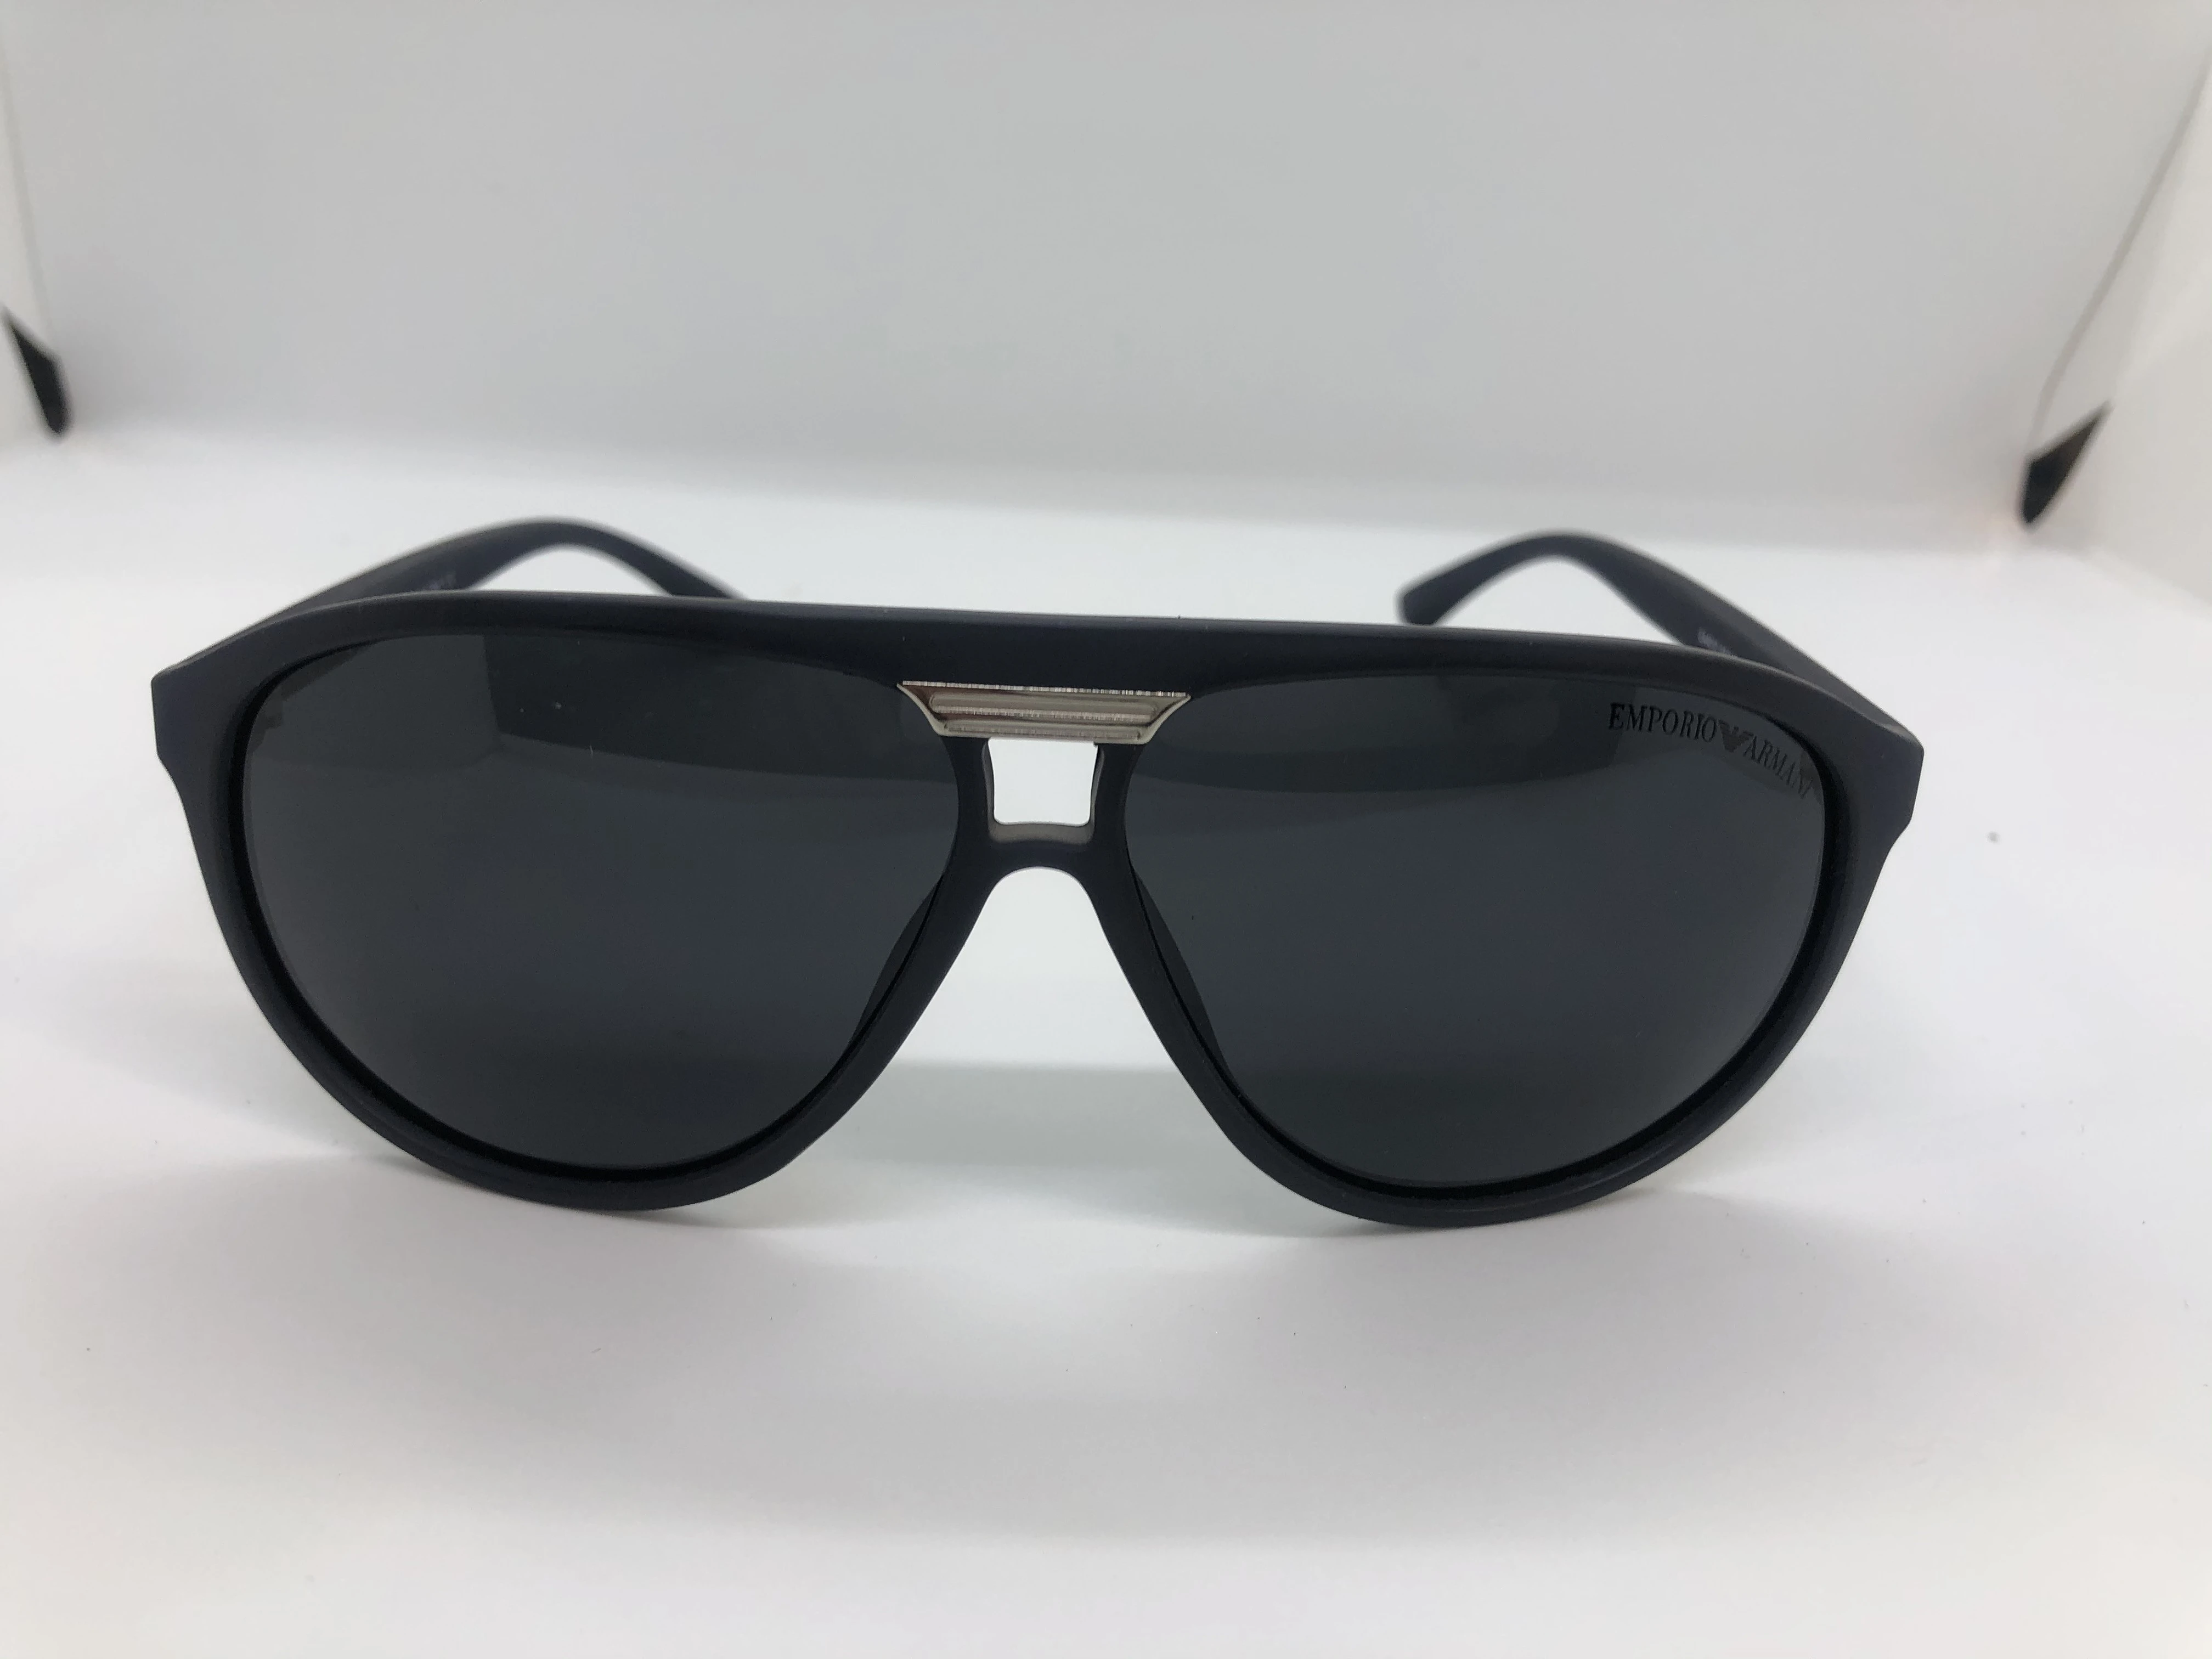 نظارة شمسية - من امبوريو ارماني - بإطاركحلي بولي كاربونات - وعدسات سوداء متدرج - وزراع بولي كاربونات كحلي - للرجال